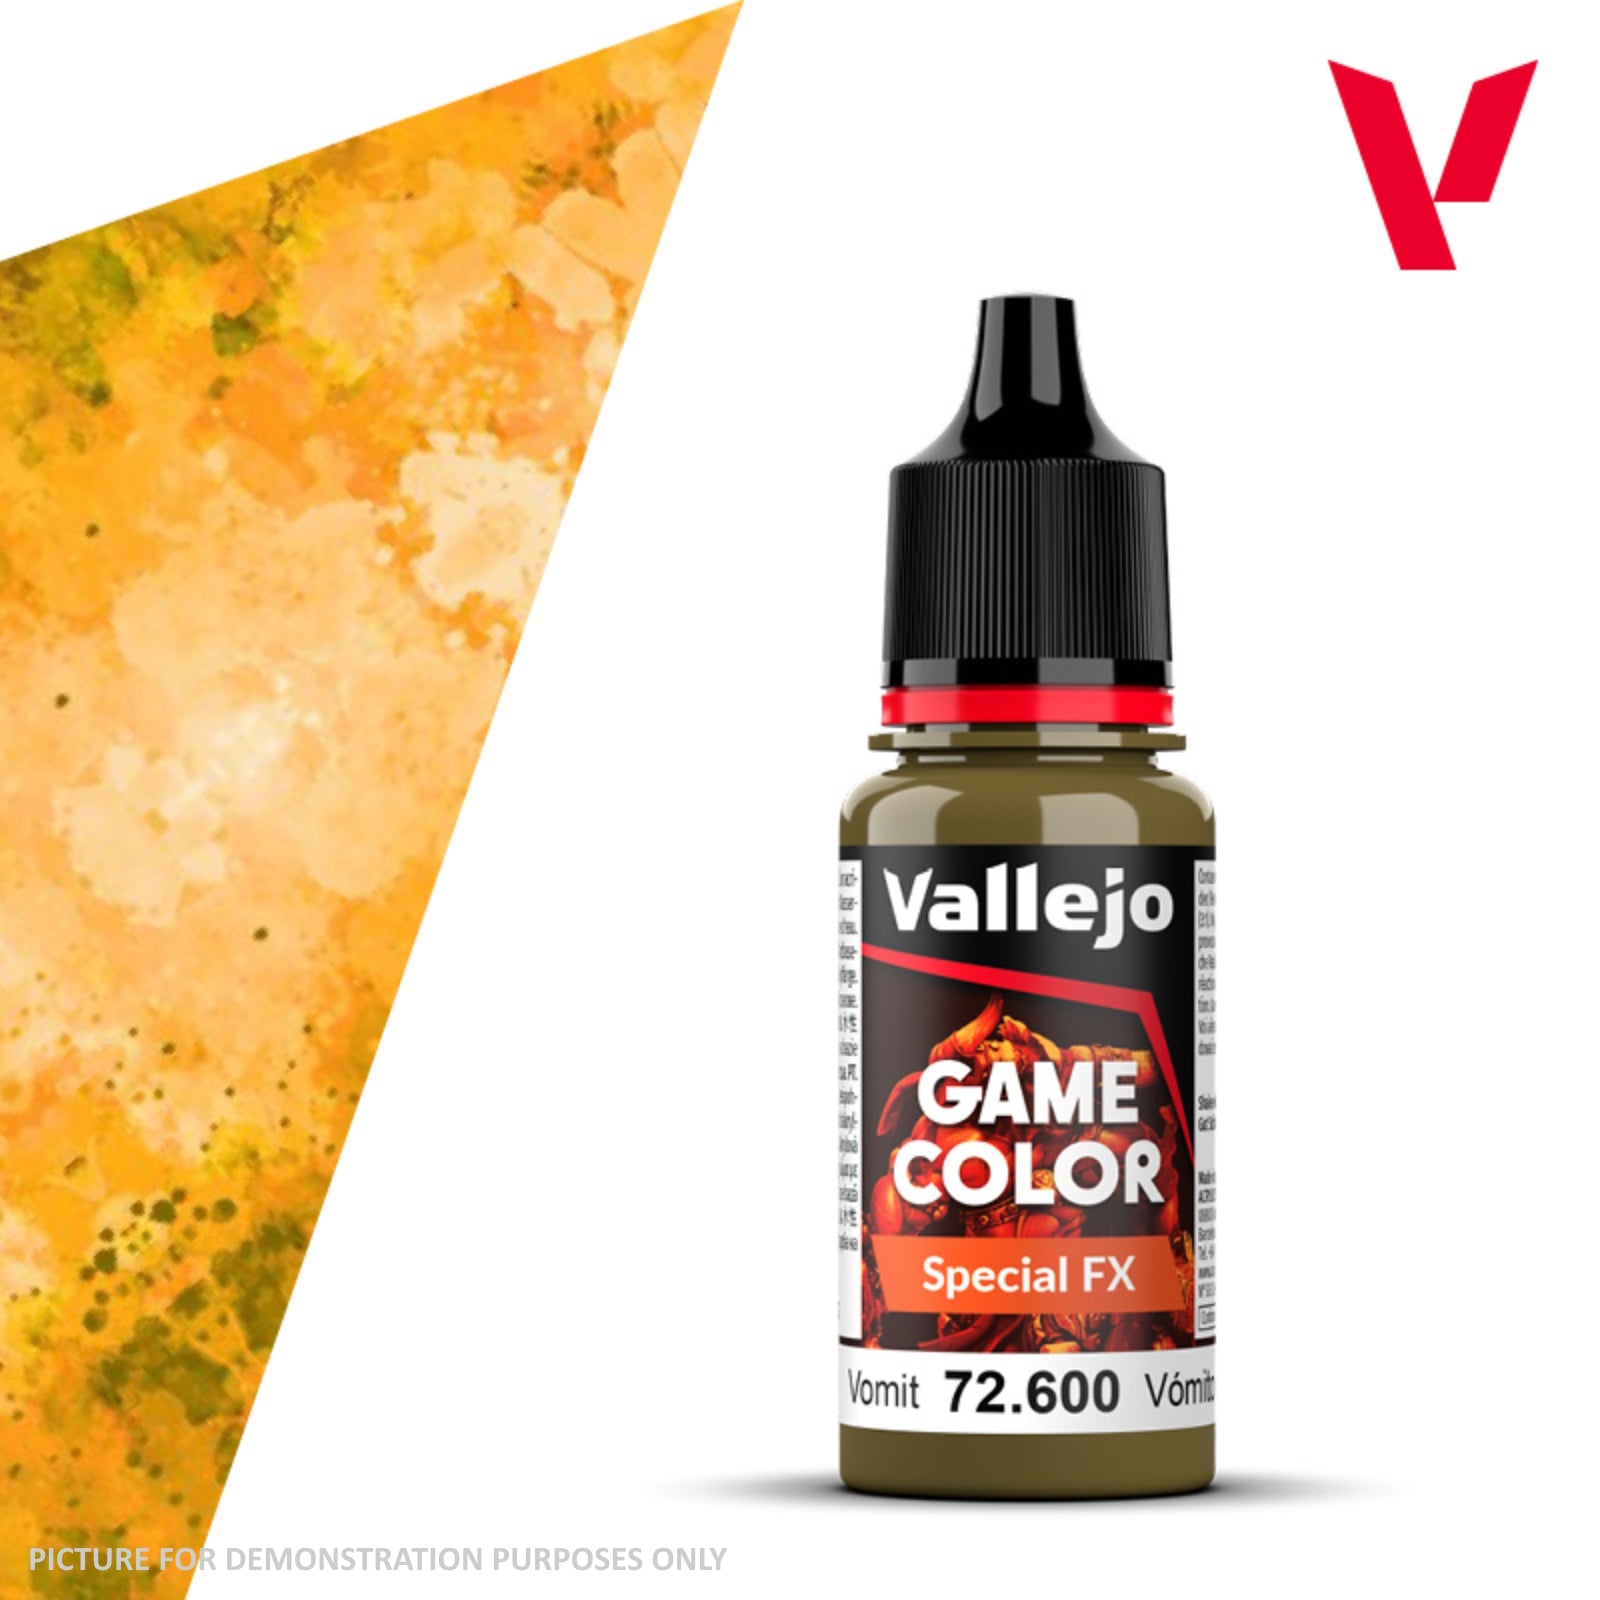 Vallejo Game Colour Special FX - 72.600 Vomit 18ml